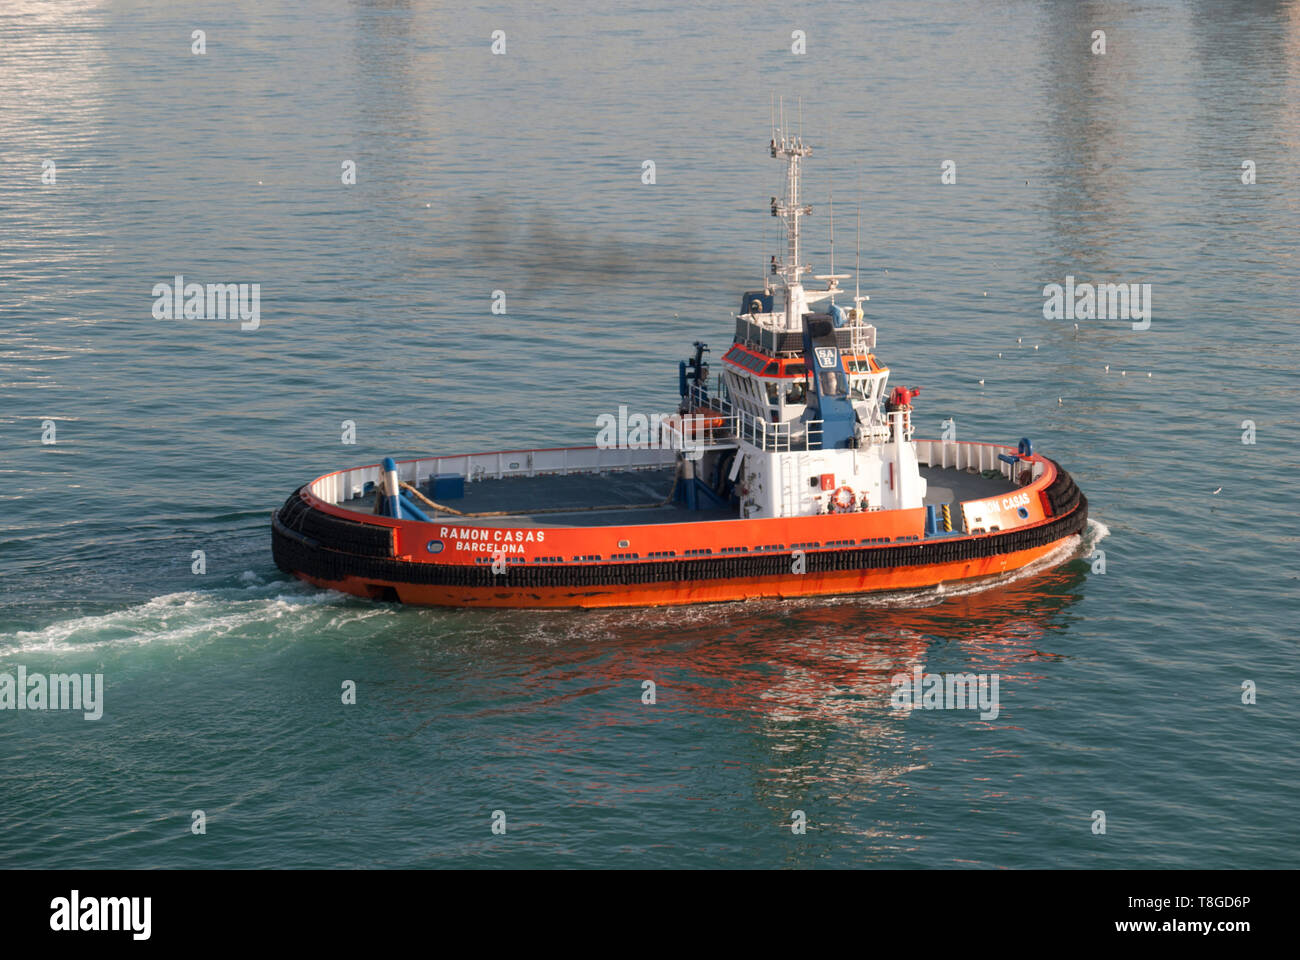 Tug boat Ramon Casas naviguant dans les eaux du port de Barcelone. Banque D'Images